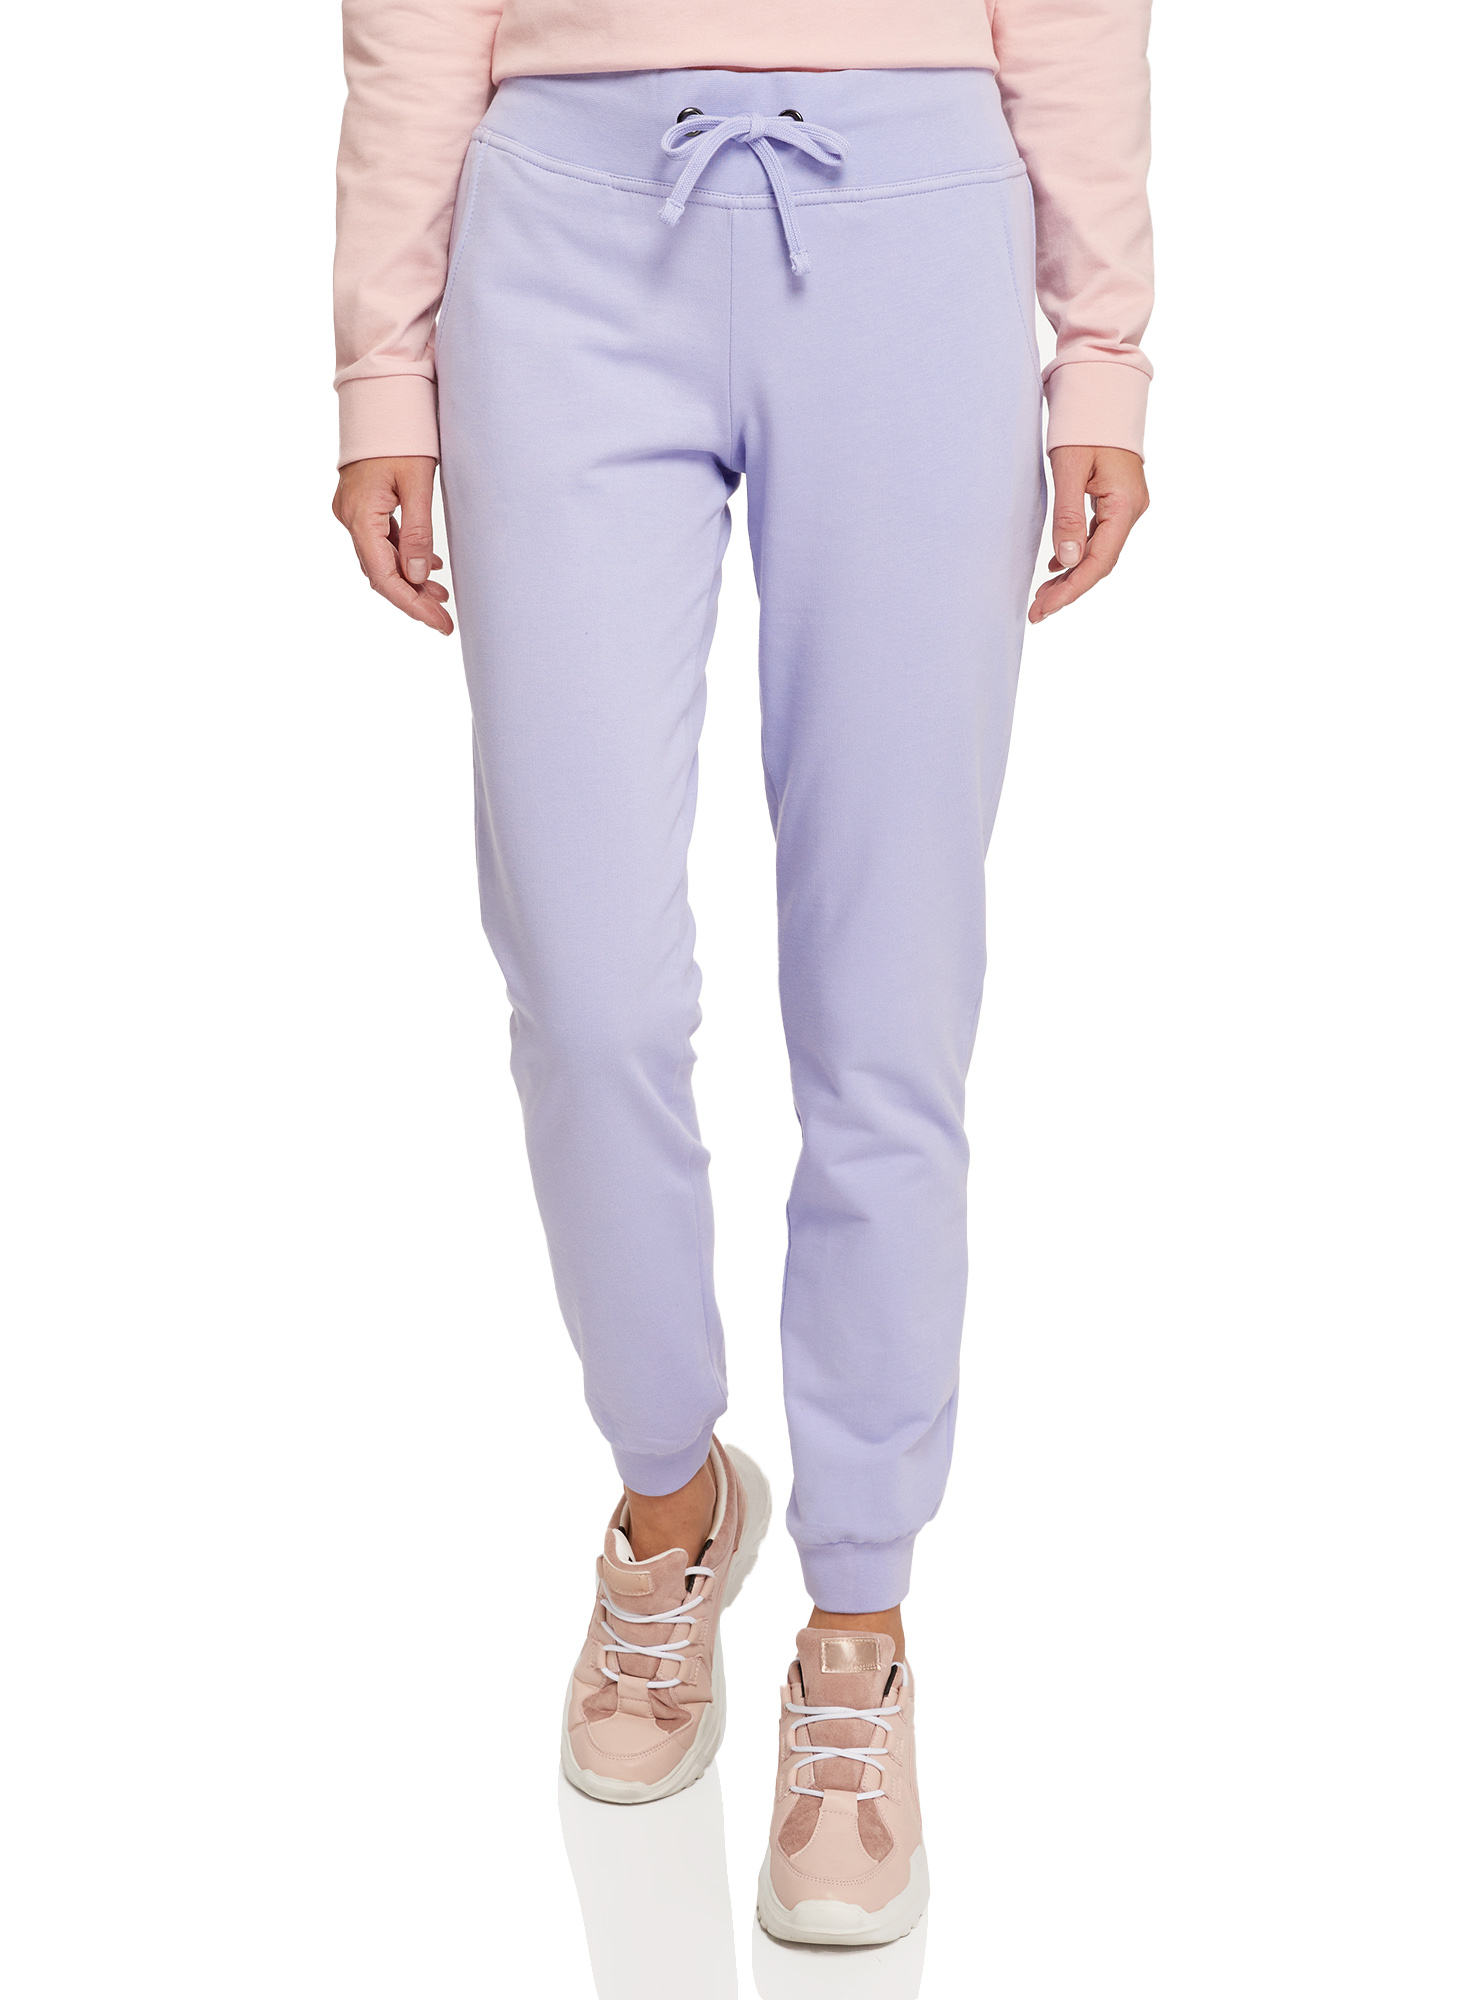 Спортивные брюки женские oodji 16700030-5B фиолетовые XS